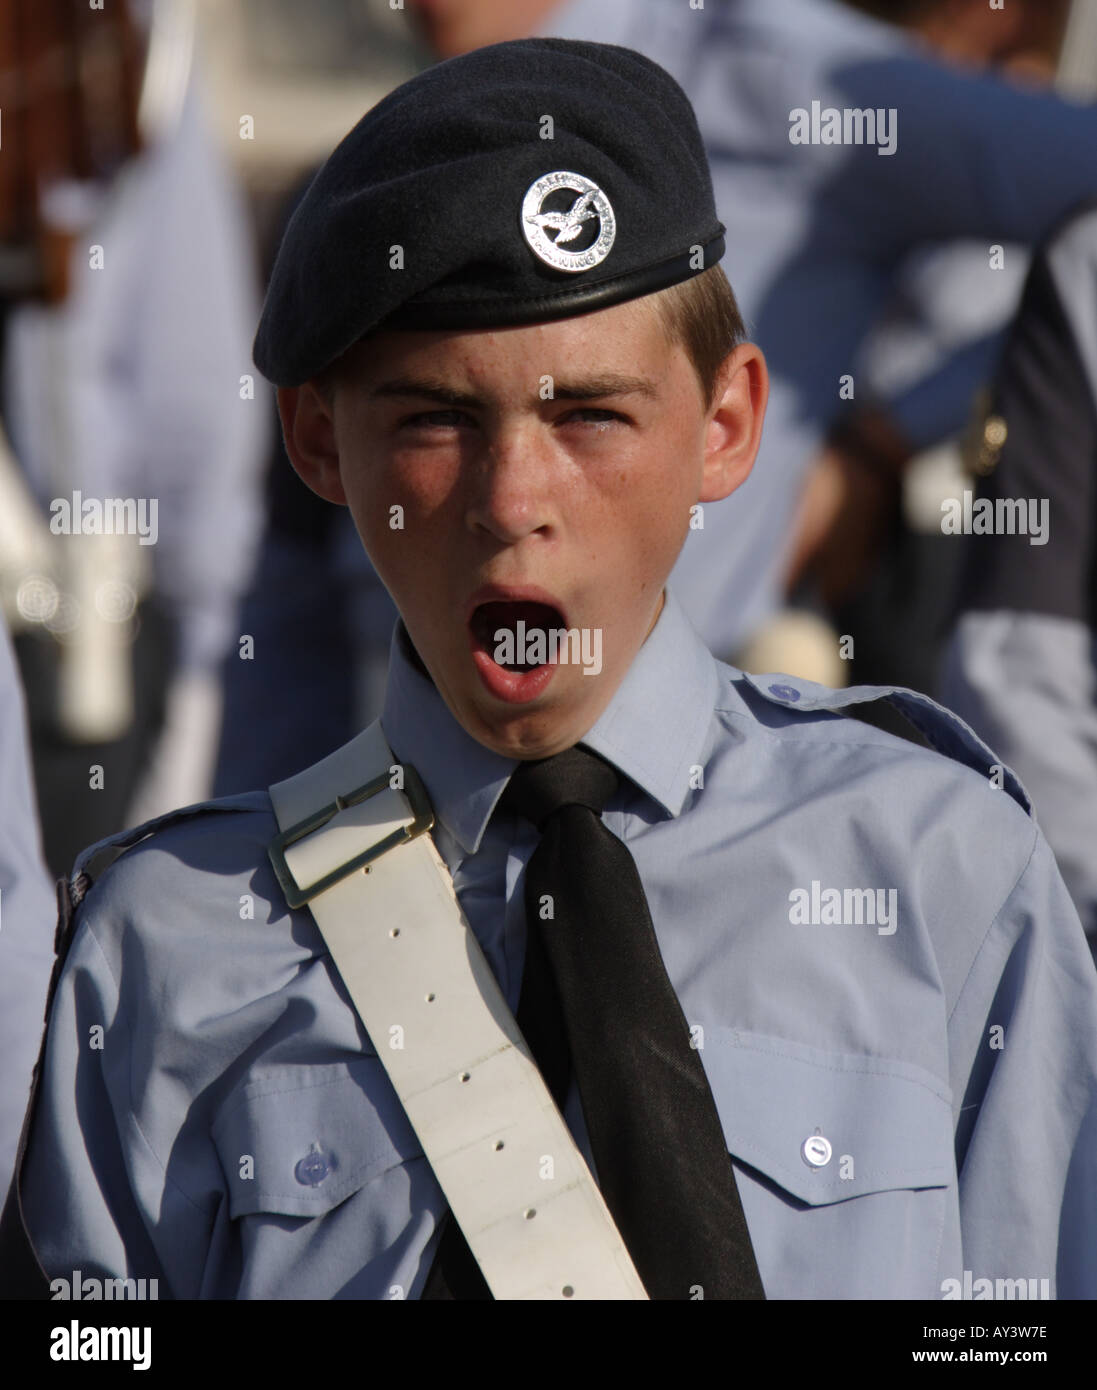 ATC Cadet yawning on parade Stock Photo